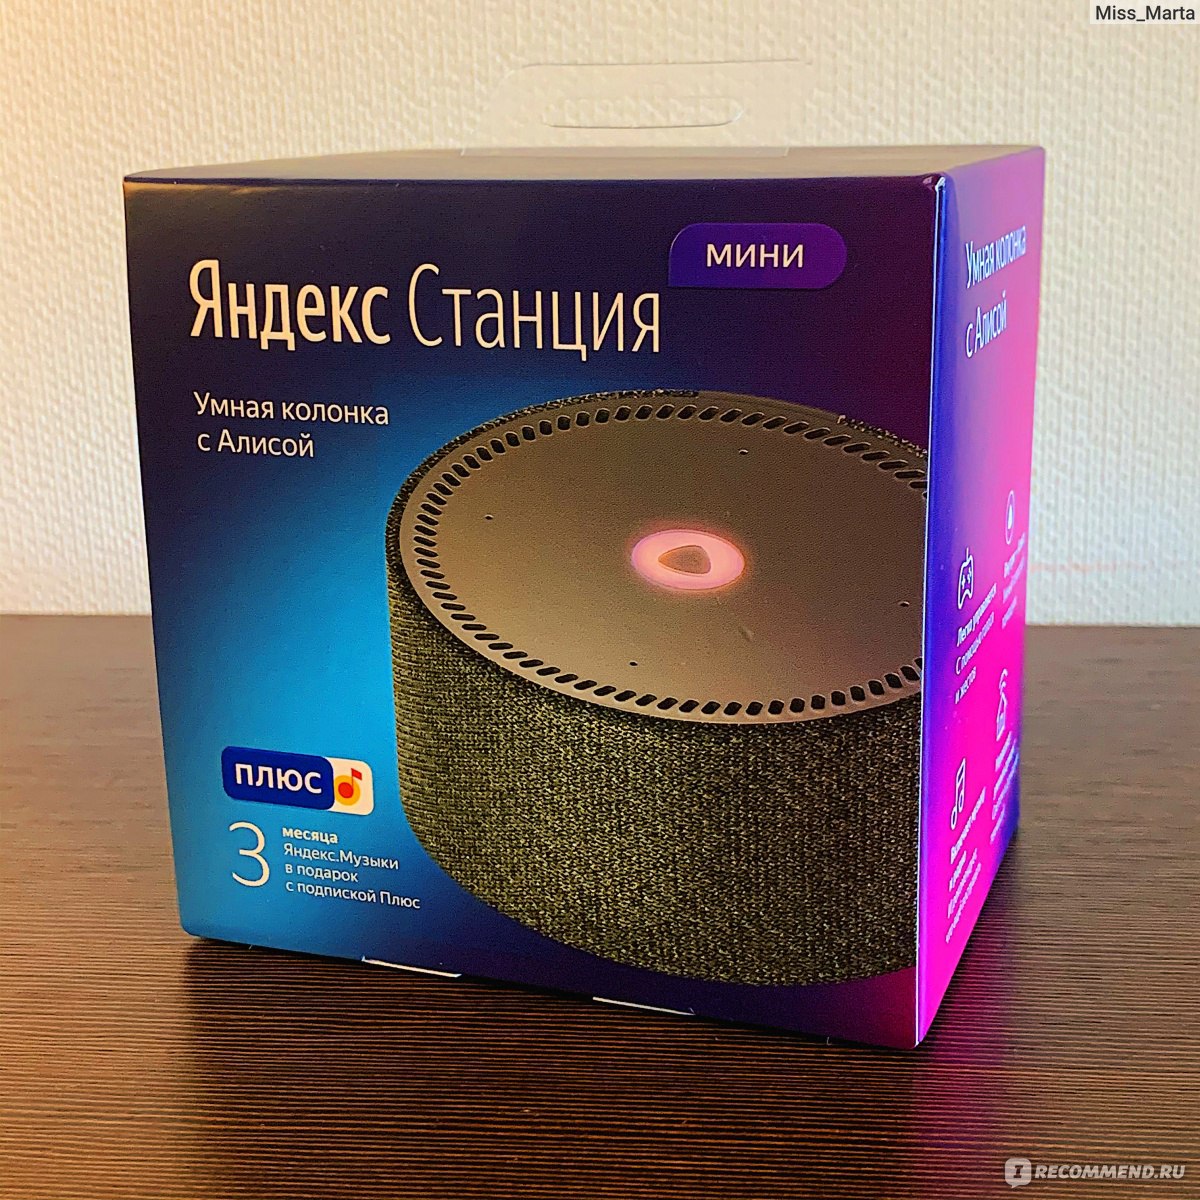 Музыкальные возможности Яндекс станция Алиса мини расширены.